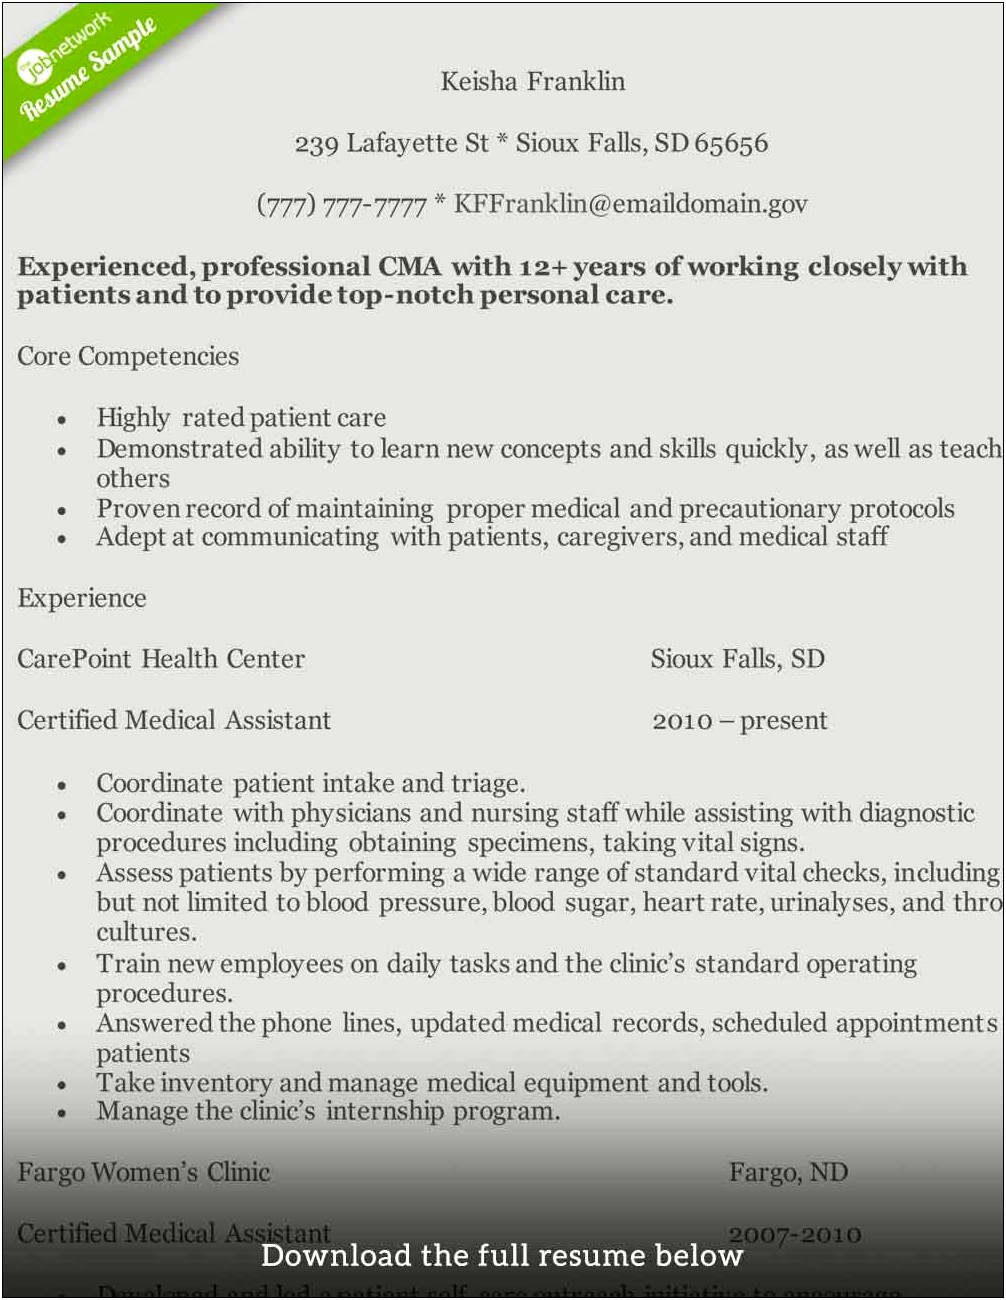 Resume Sample For Medical Assistant Internship